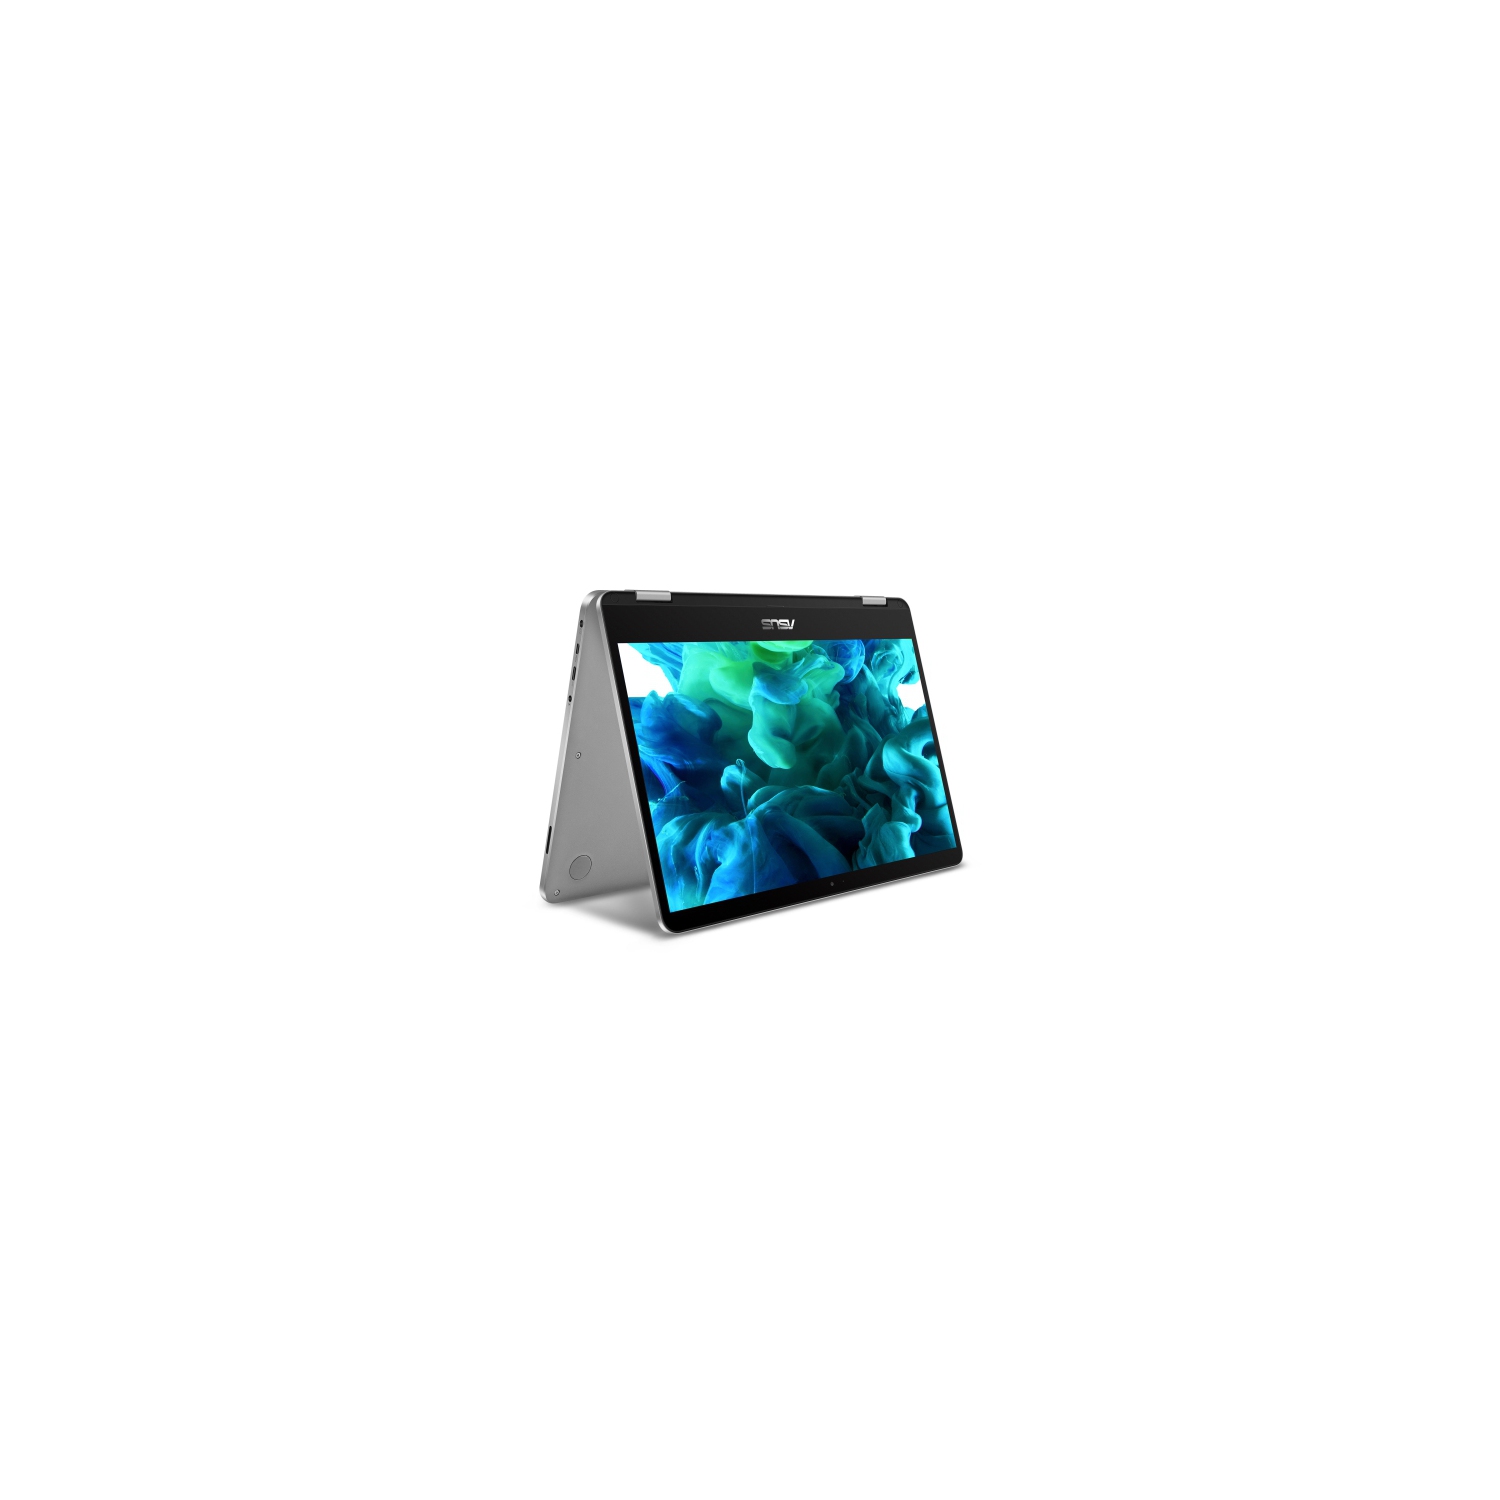 Refurbished (Good) - Asus Vivobook Flip 14" 2-in-1 Laptop - (Intel Celeron N4000 / 64GB eMMC / 4GB RAM / Windows 10) - (J401MA-YS02)